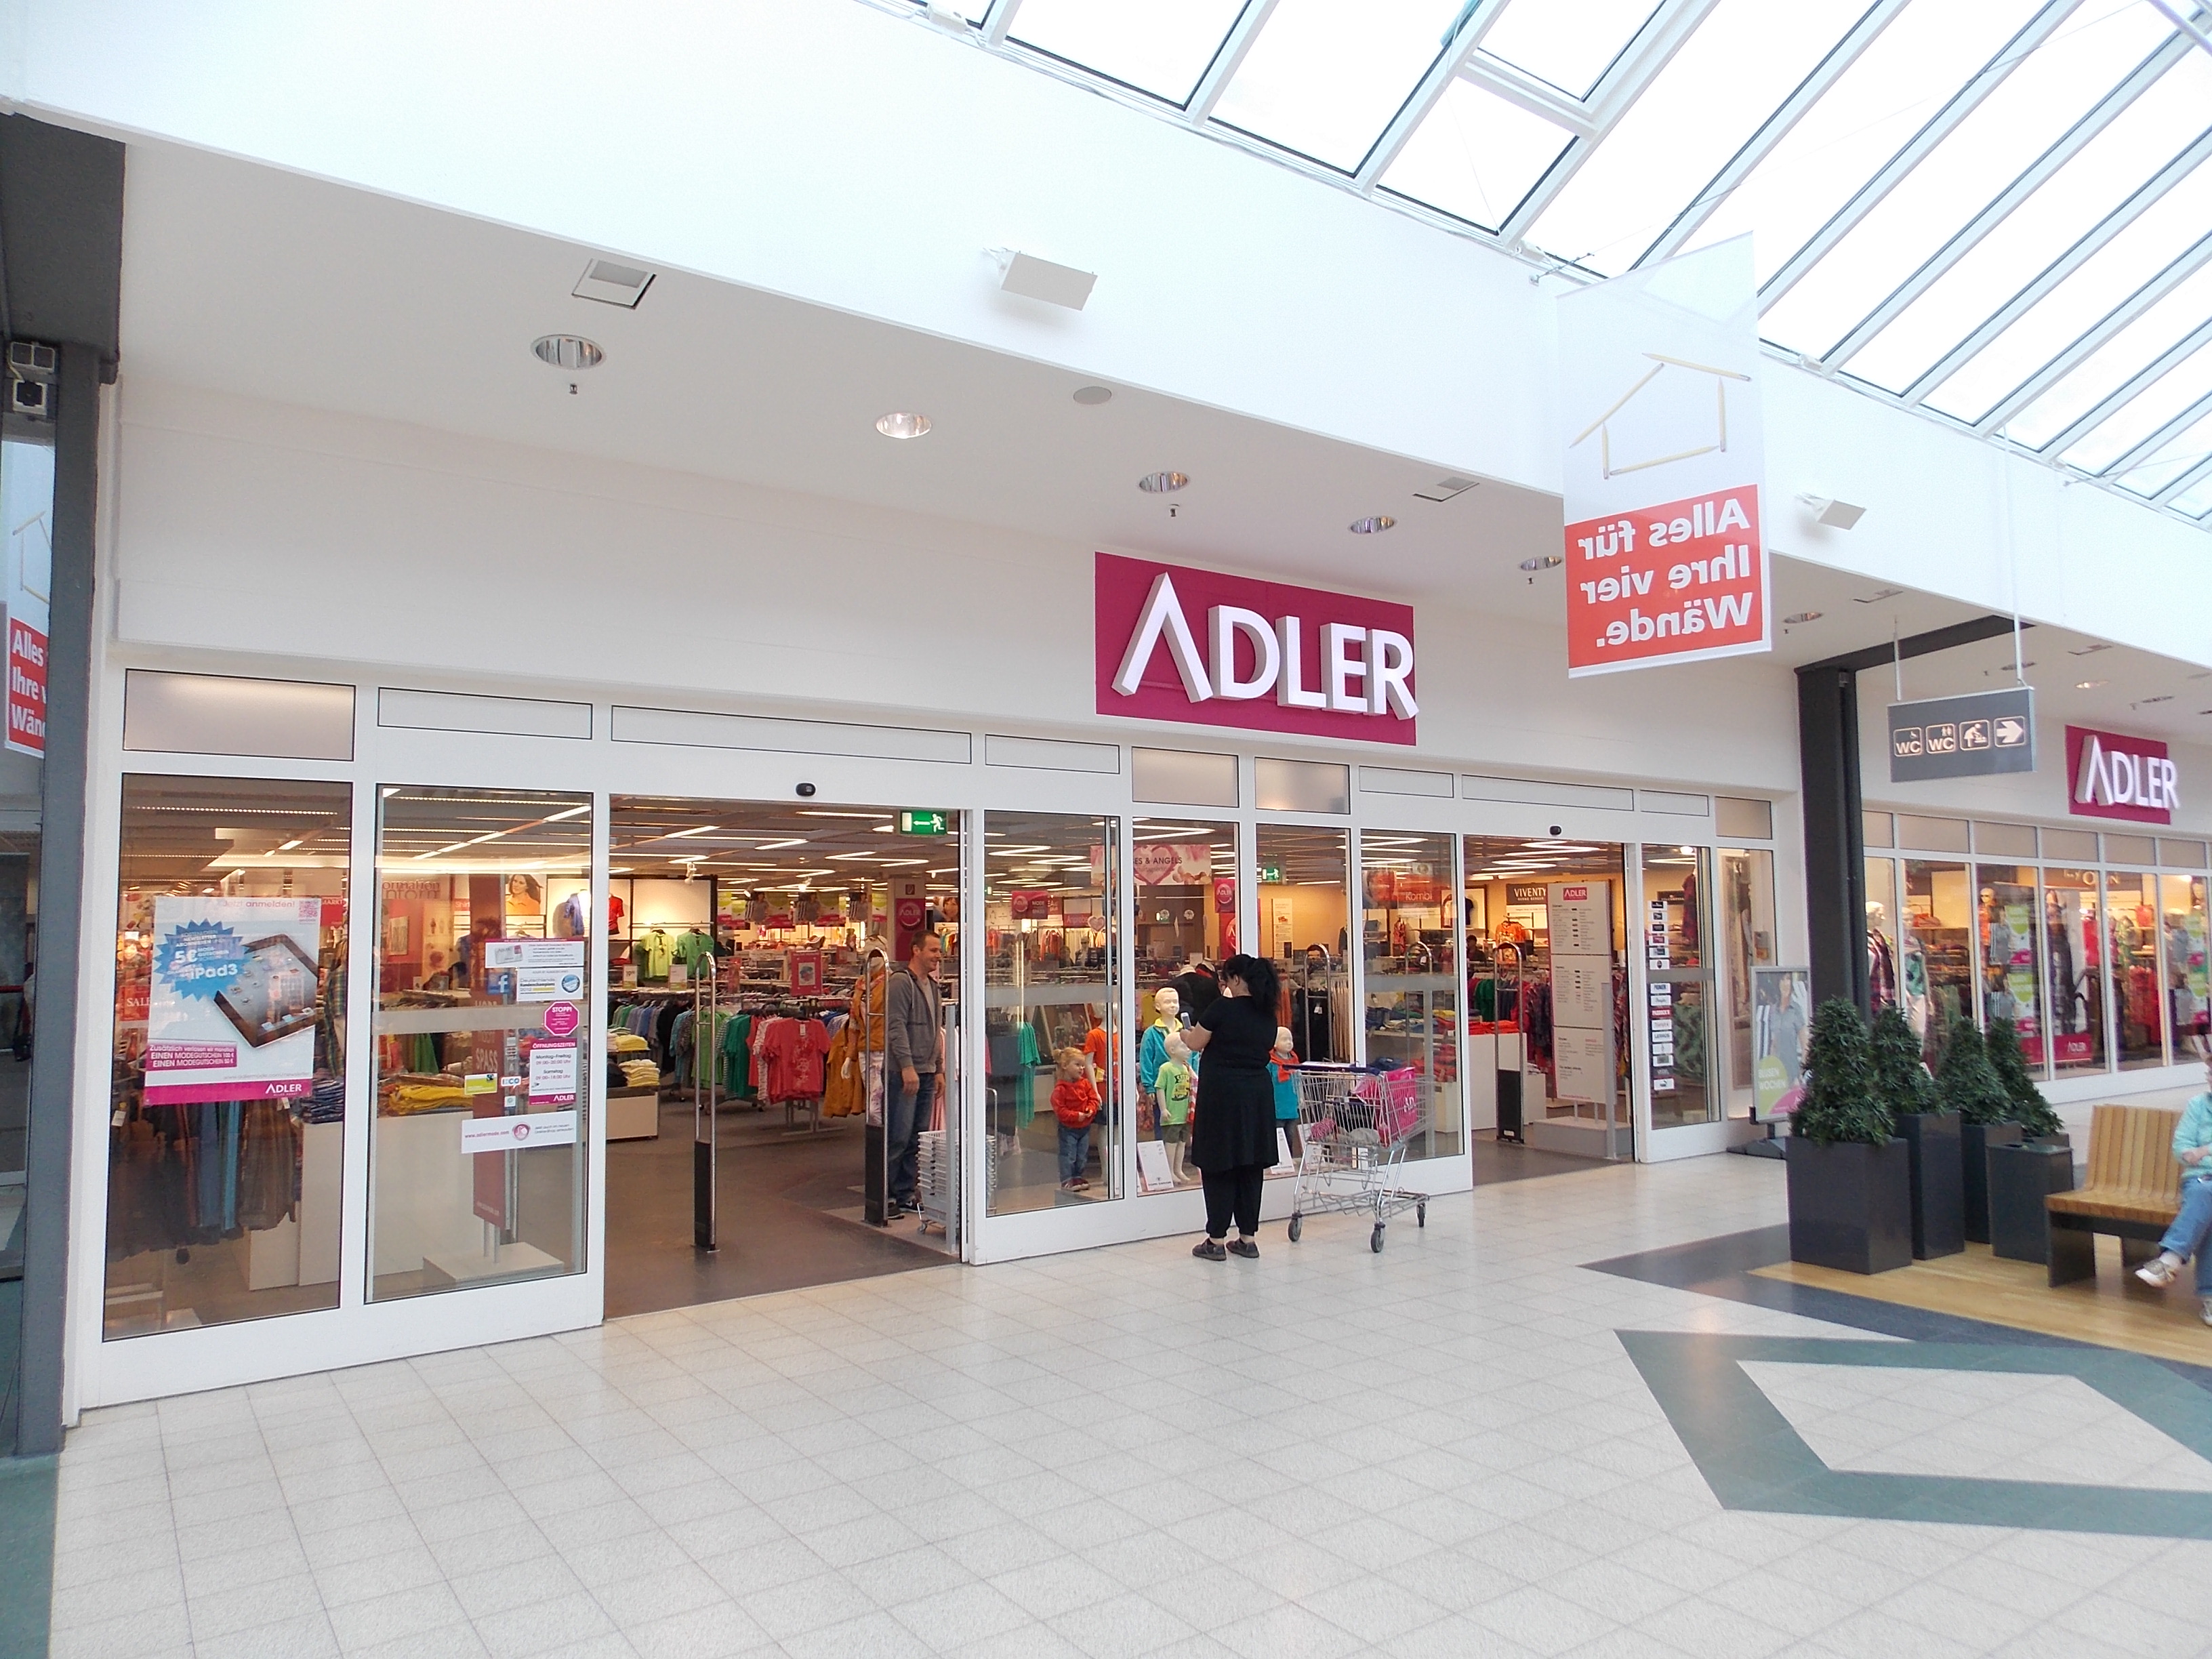 Bild 1 Adler Modemärkte AG in Neubrandenburg